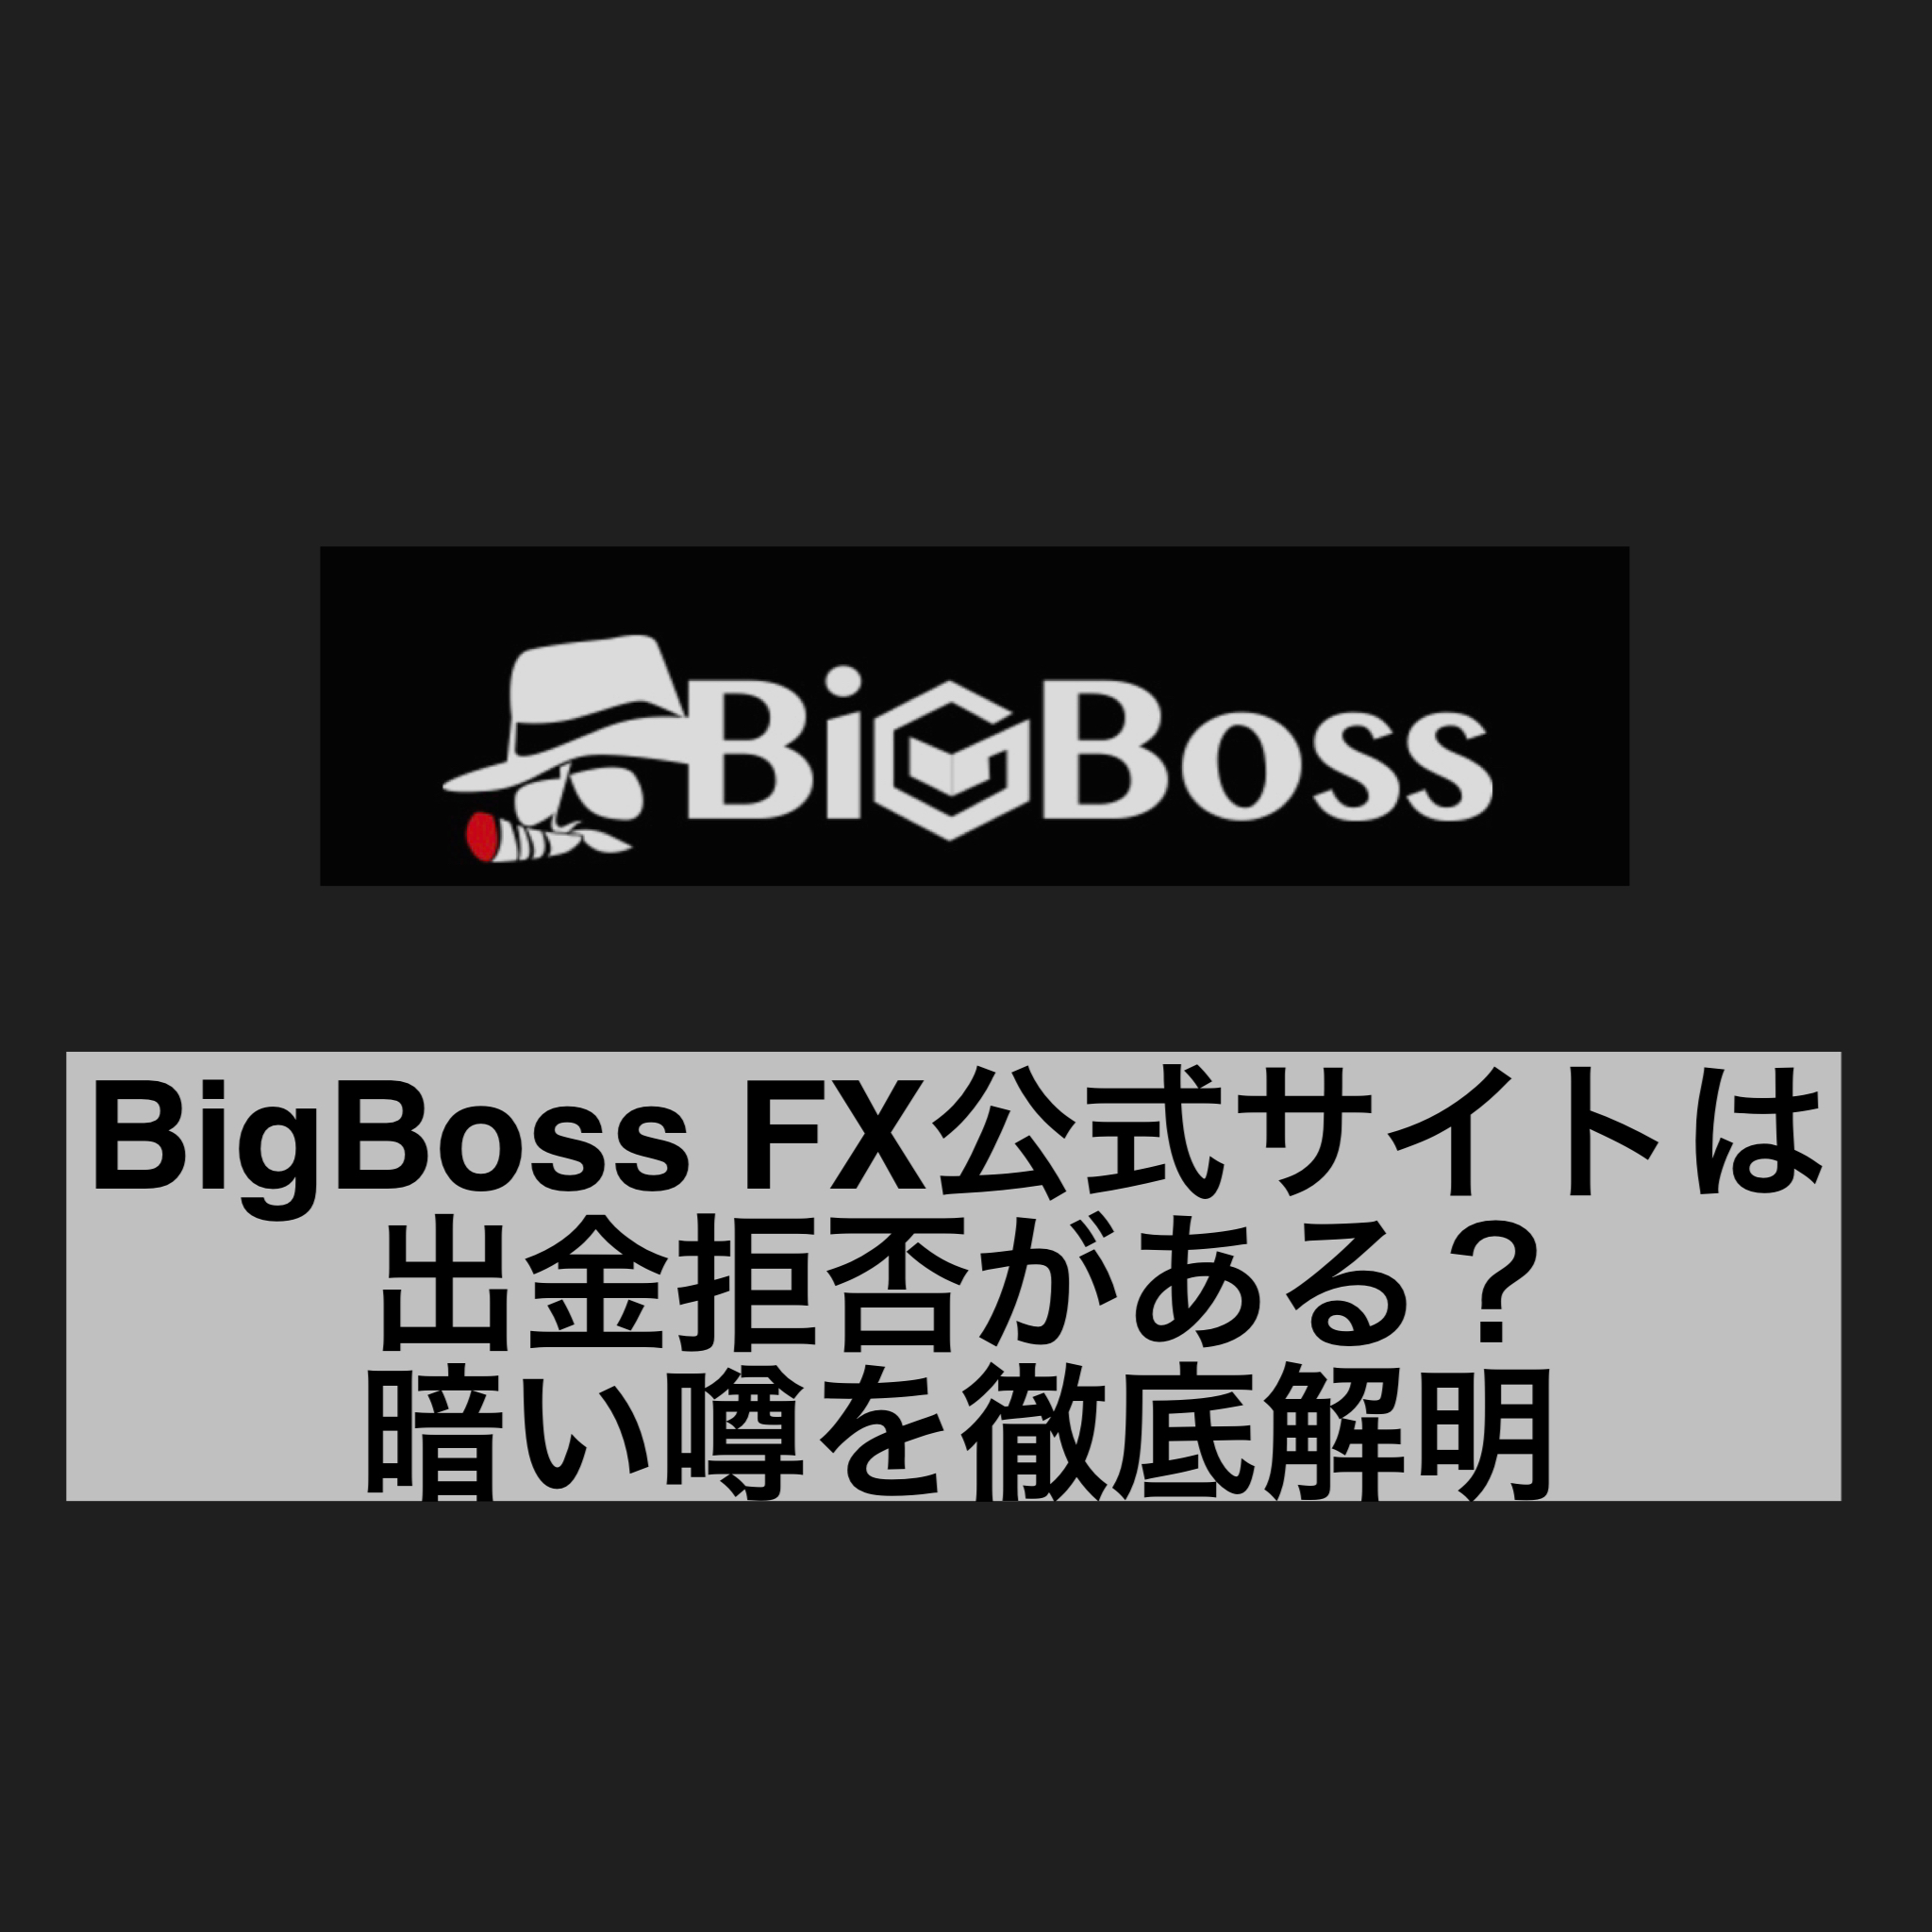 BigBoss FX公式サイトは出金拒否がある？暗い噂を徹底解明